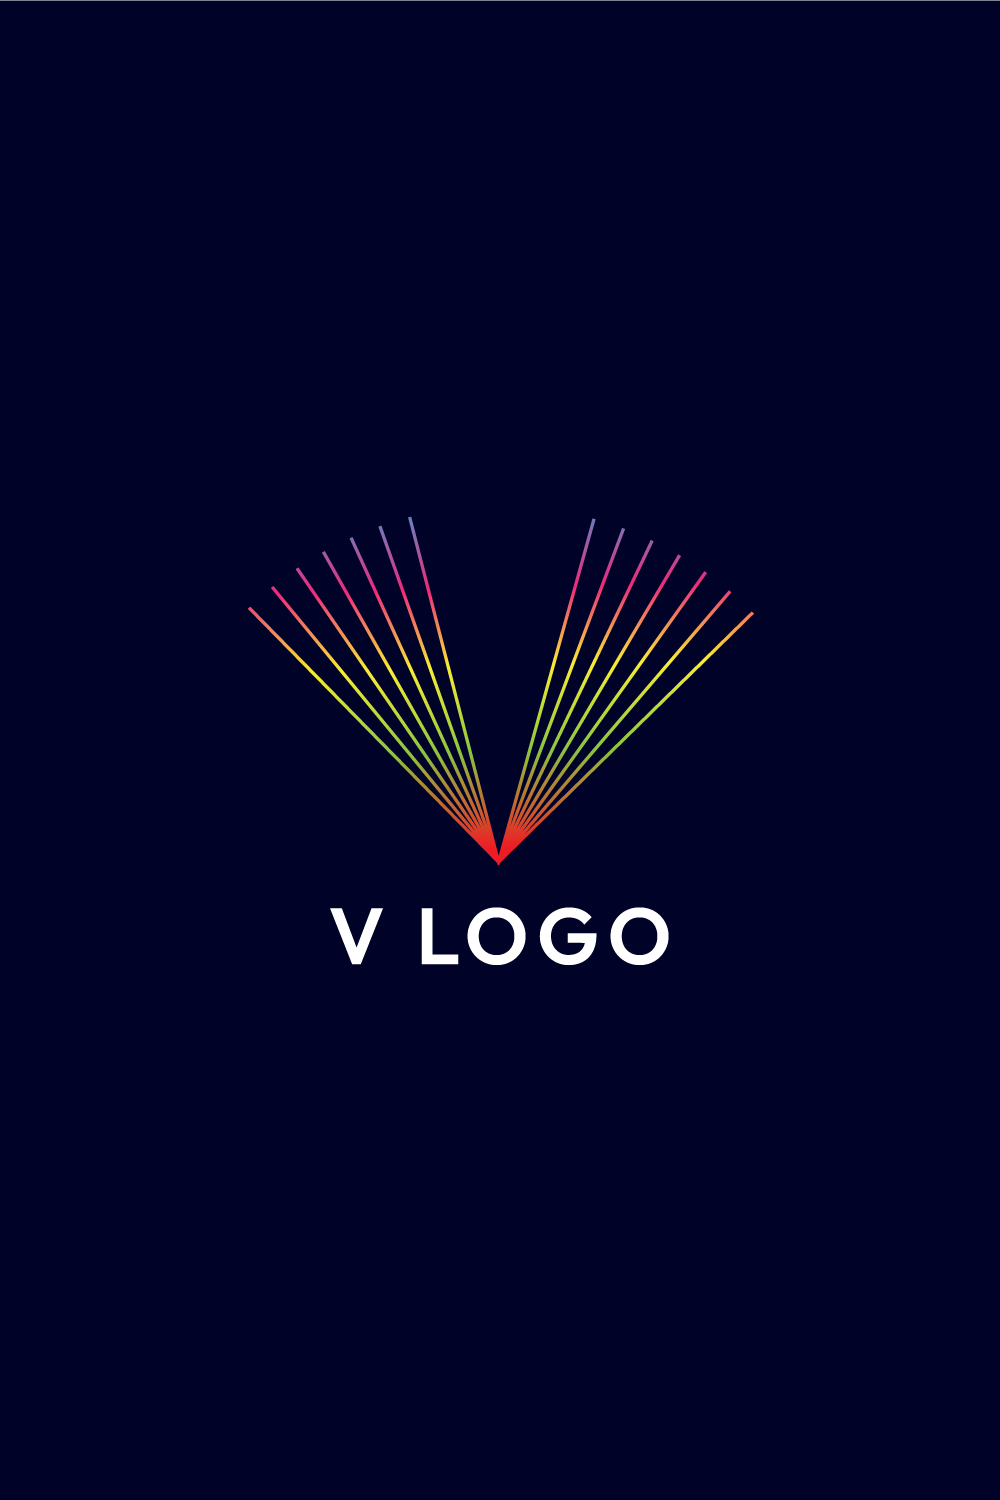 Sleek Line Art Letter V Logo Design - Professional Branding Solution pinterest preview image.